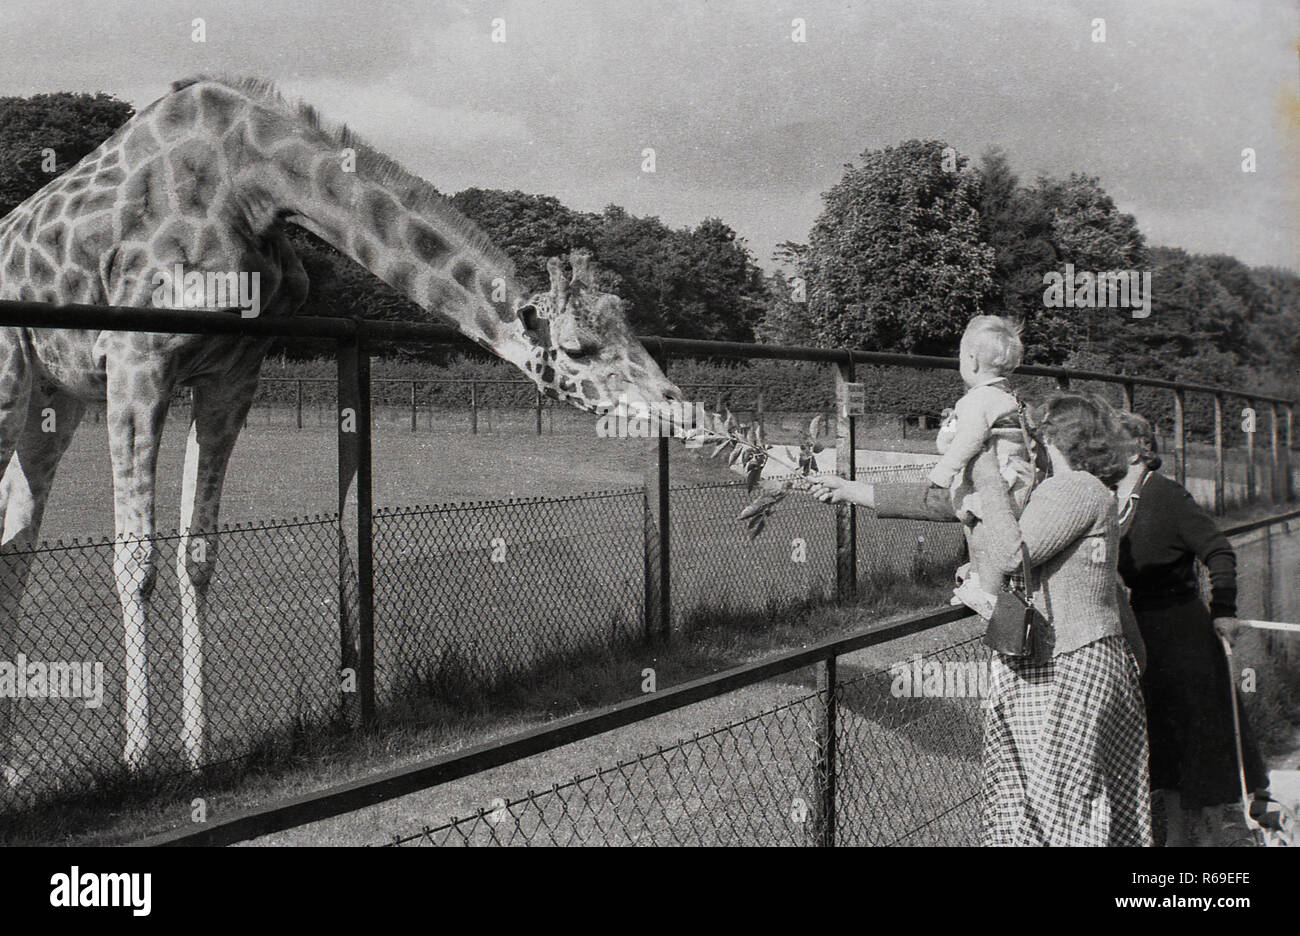 1950, historische, eine Mutter ihr Kind halten und mit ausgestreckter Hand Fütterung eine Giraffe in seinem Gehäuse über einen Zaun außerhalb in einem Zoo, England, UK. Wie kann hier gesehen werden, Giraffen haben lange Hälse und Vorderbeine und sind die weltweit höchsten lebenden Tier. Stockfoto